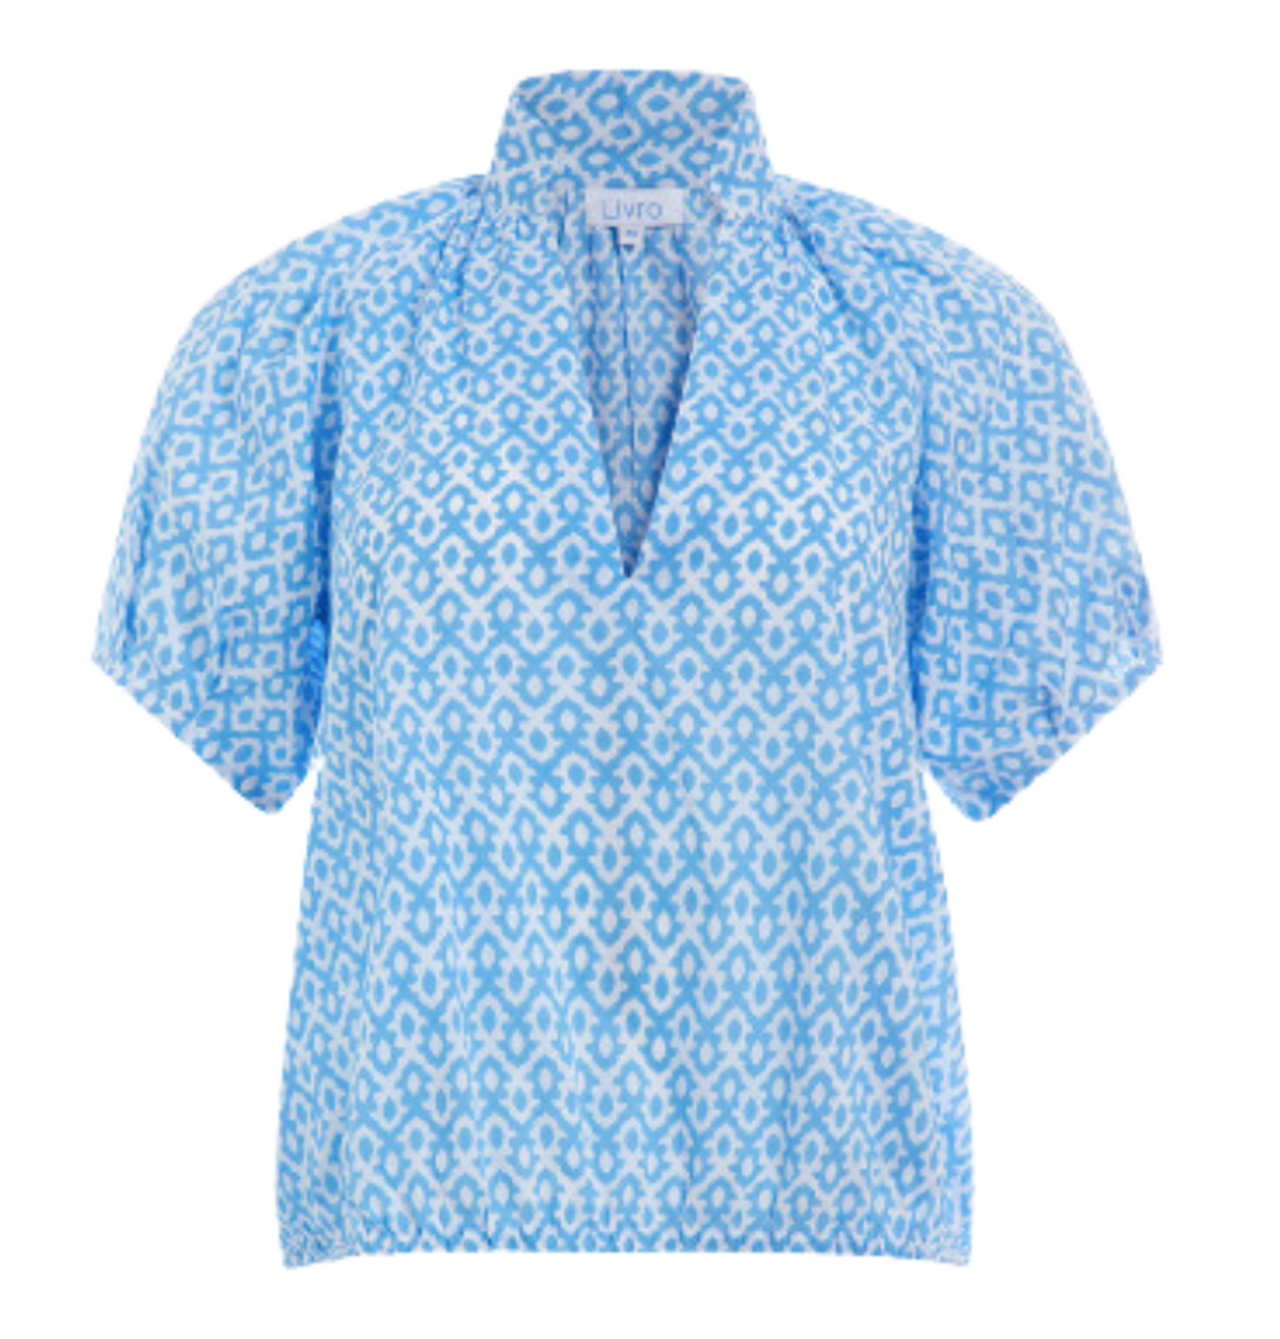 Women's tops | Women's blouses & shirts | Mountain Brook, AL